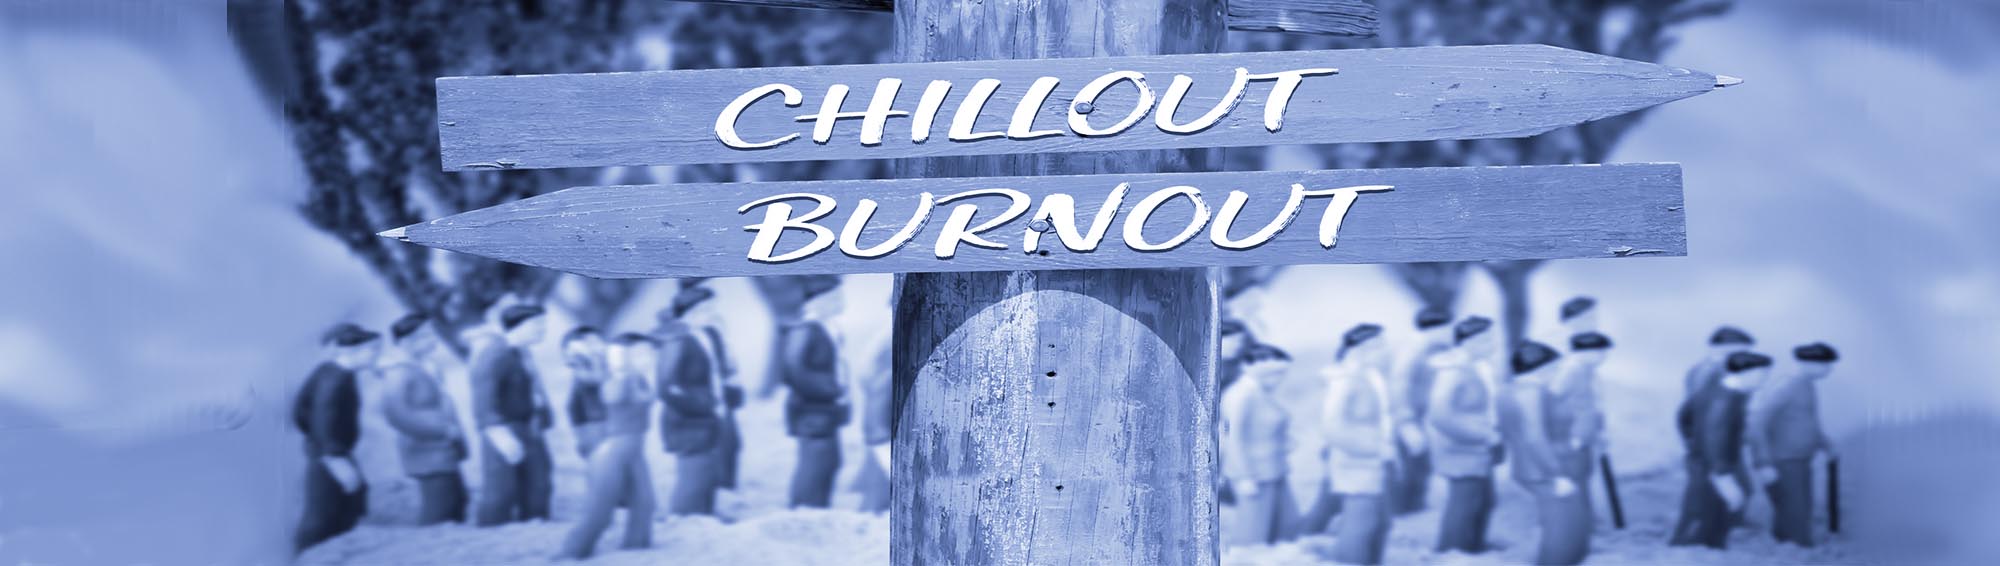 Stressbewältigung: Wegweiser 'Chillout oder Burnout?'